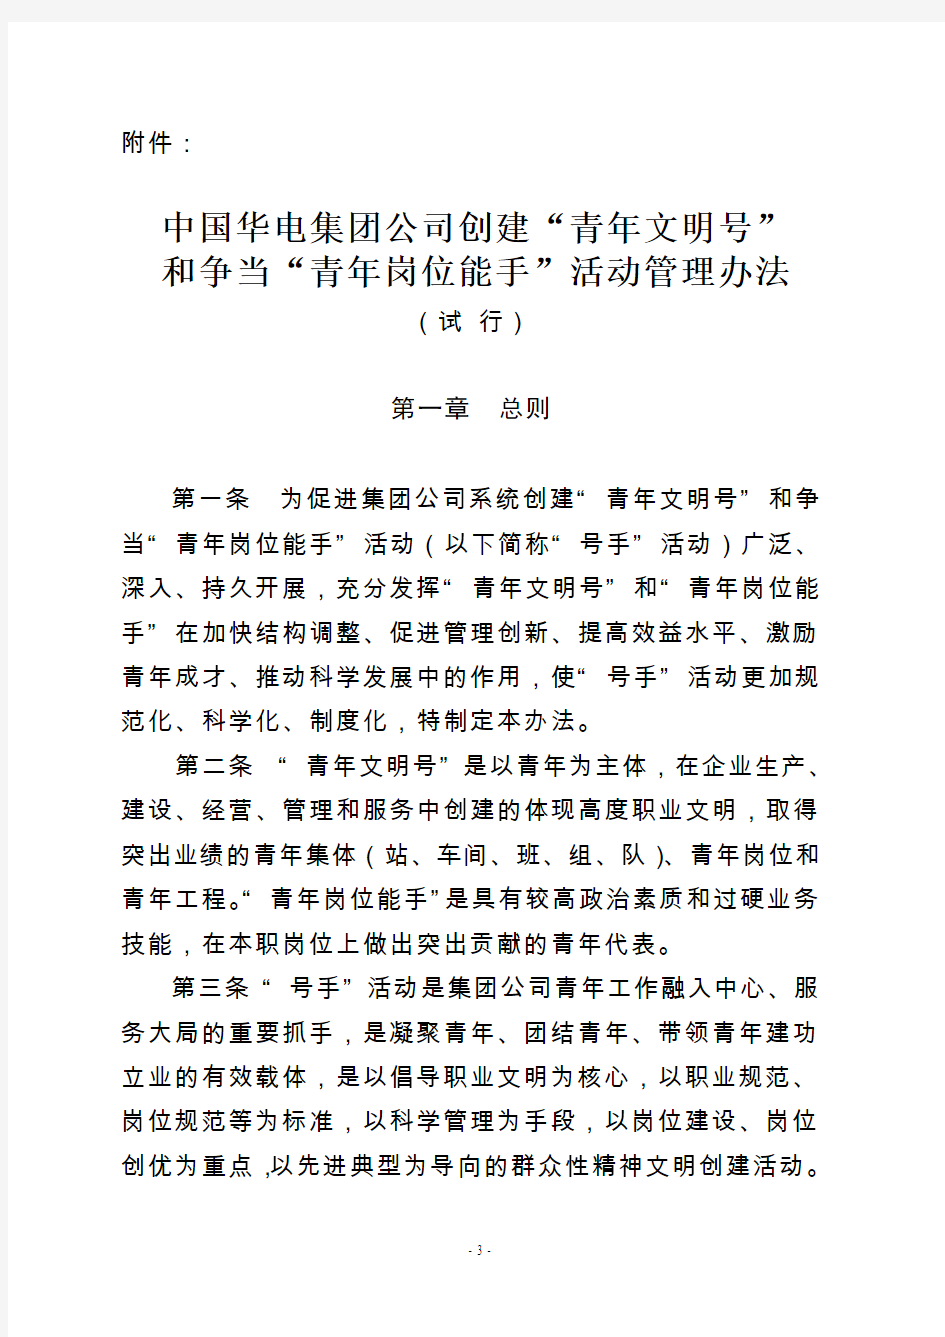 中国华电集团公司创建“青年文明号”和争当“青年岗位能手”活动管理办法